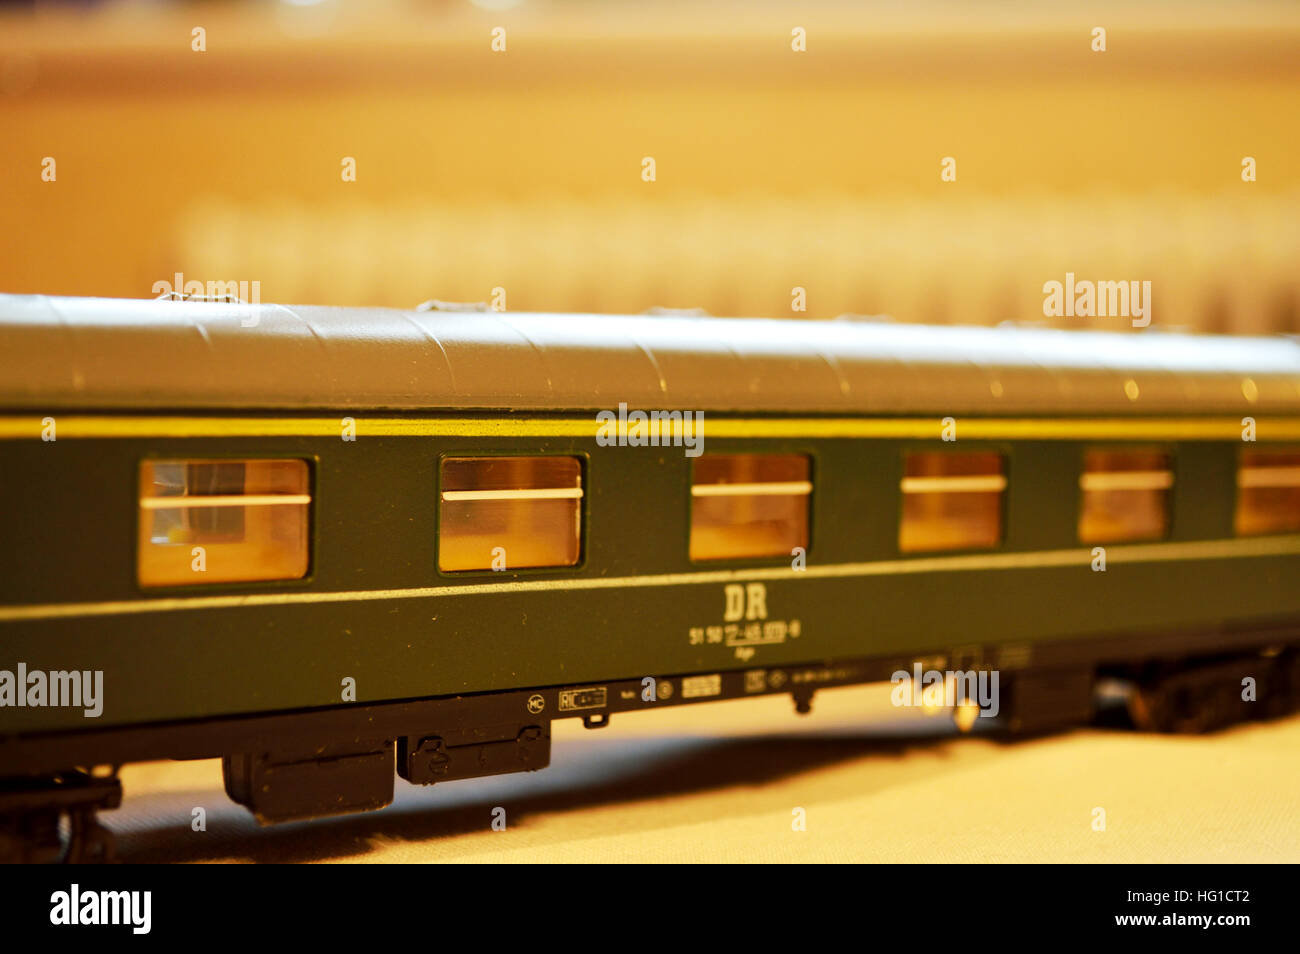 Piko Modellbahn-Wagen H0 Größe hergestellt in der DDR Stockfotografie -  Alamy